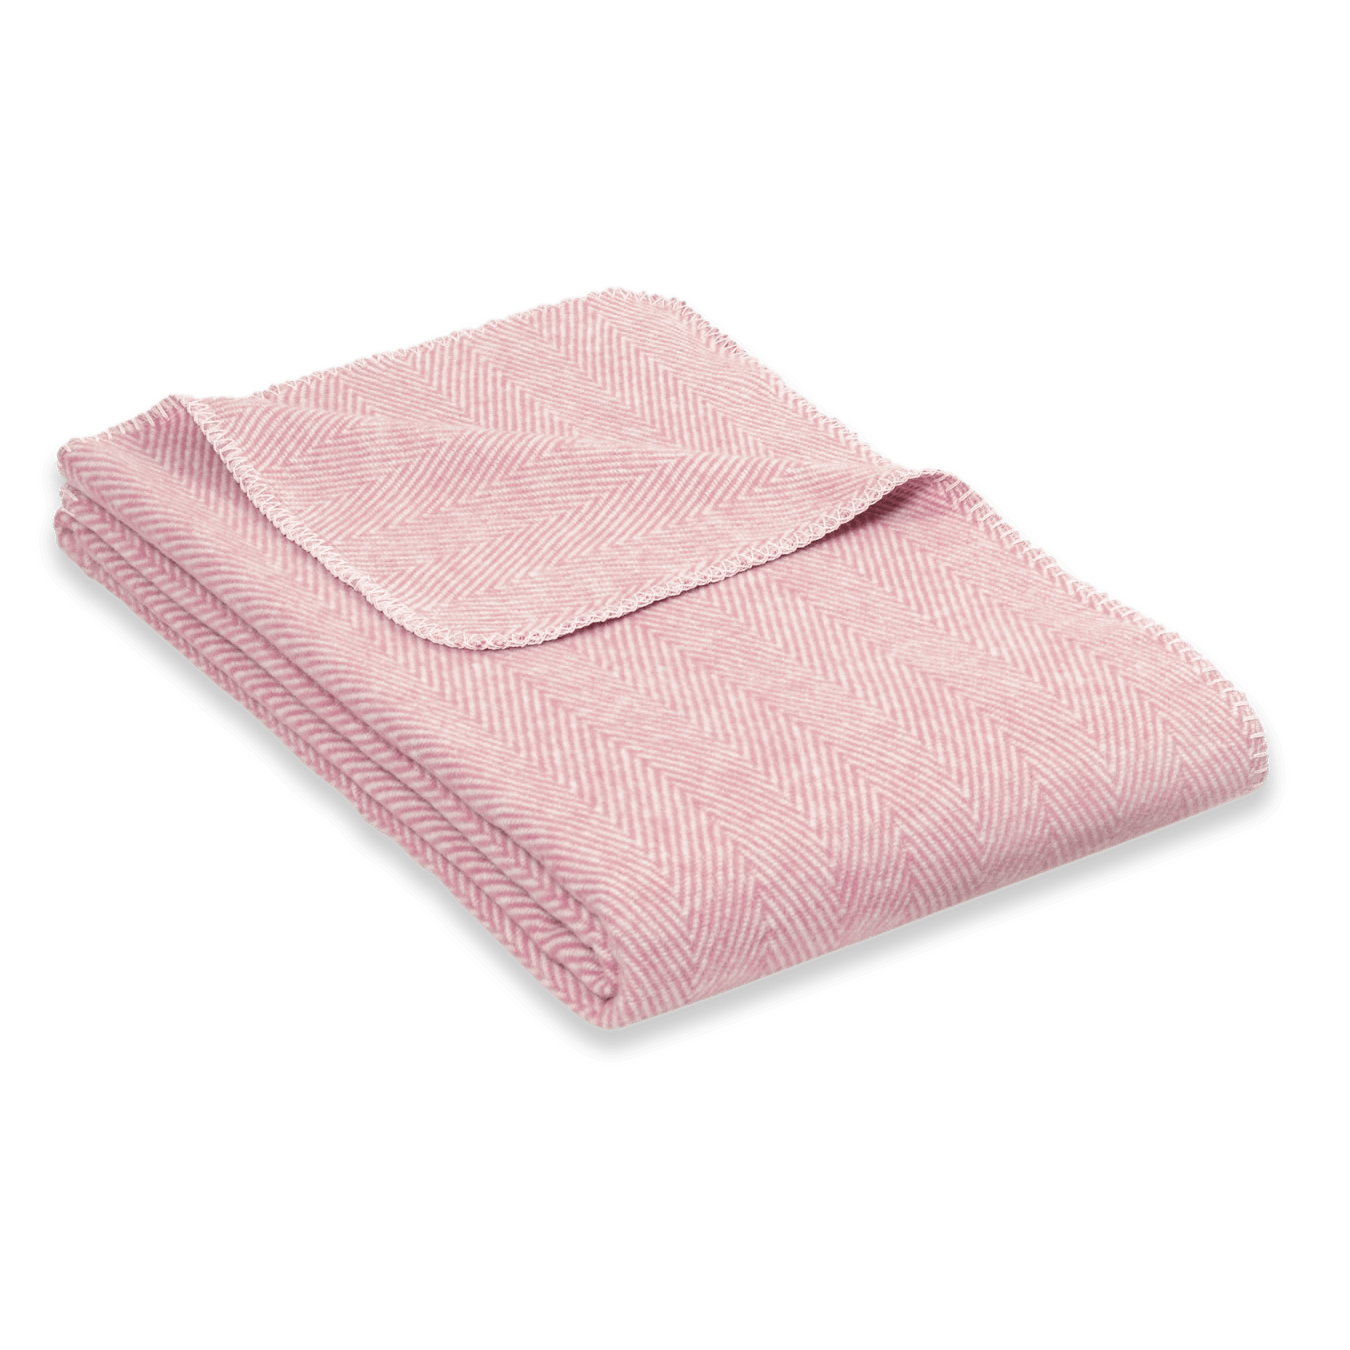 Zusammengelegte und rosafarbene Baumwolldecke